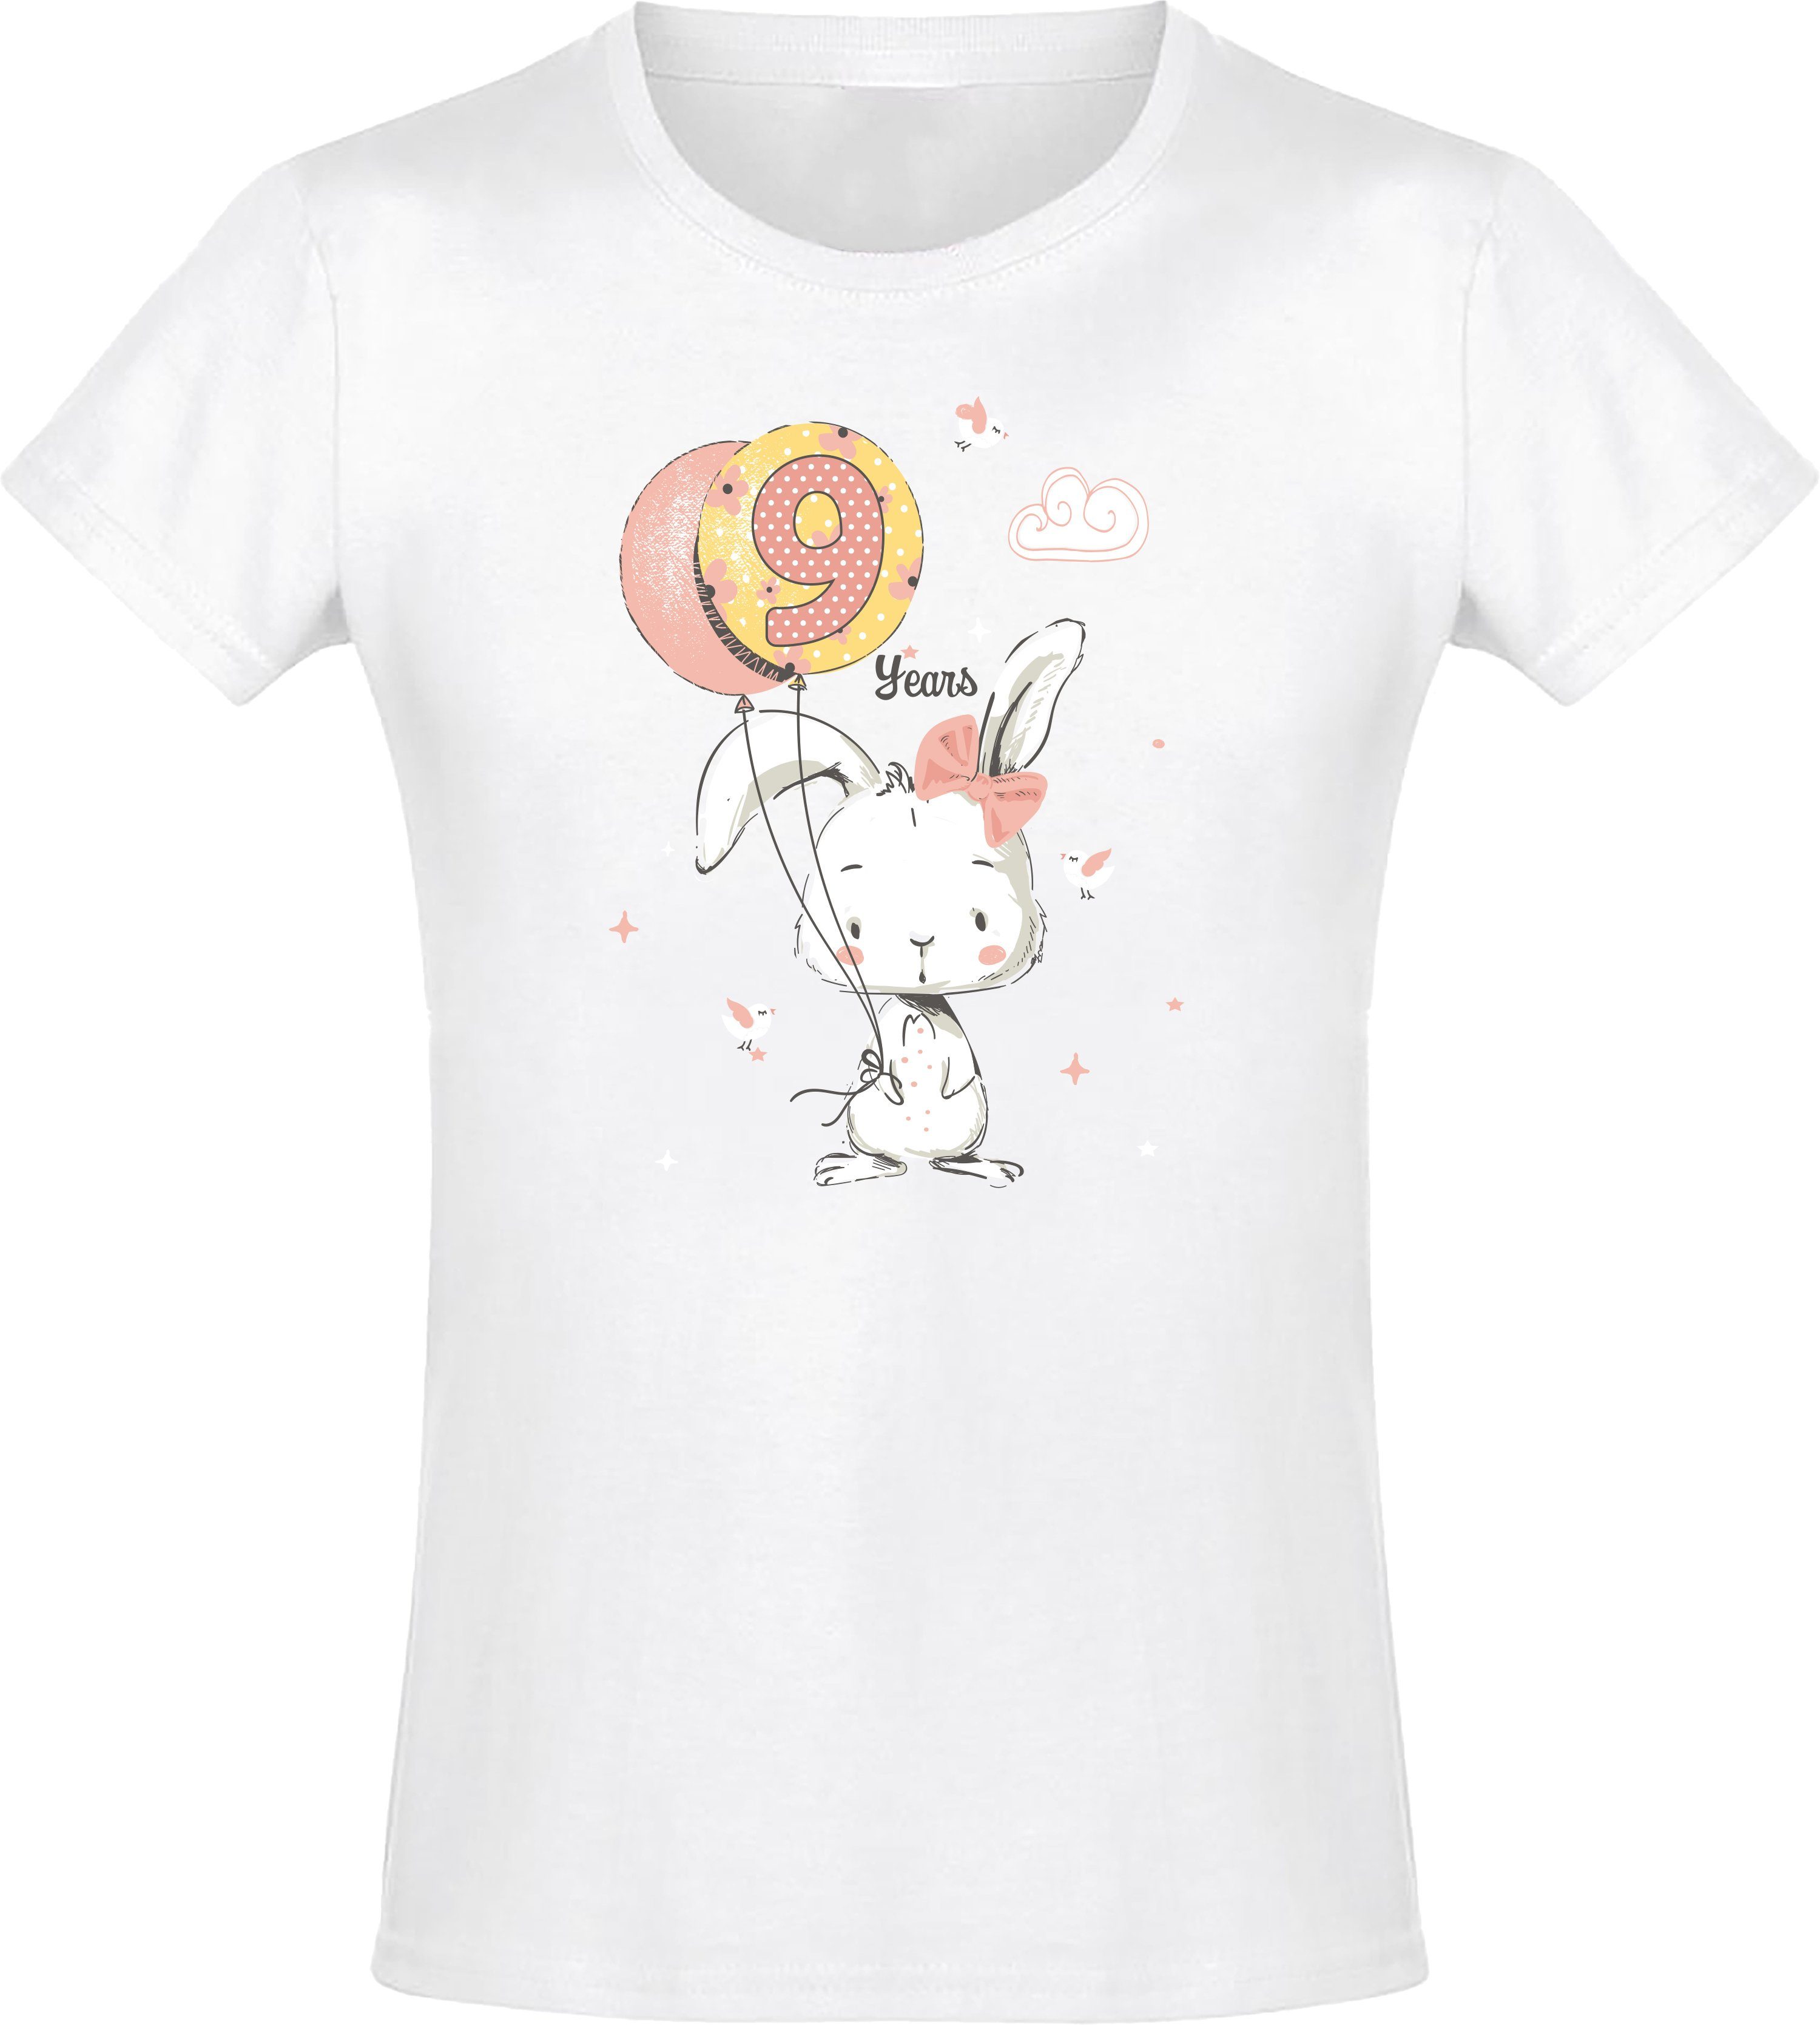 Baddery Print-Shirt Geburstagsgeschenk für Mädchen : 9 Jahre mit Hase hochwertiger Siebdruck, aus Baumwolle Weiß